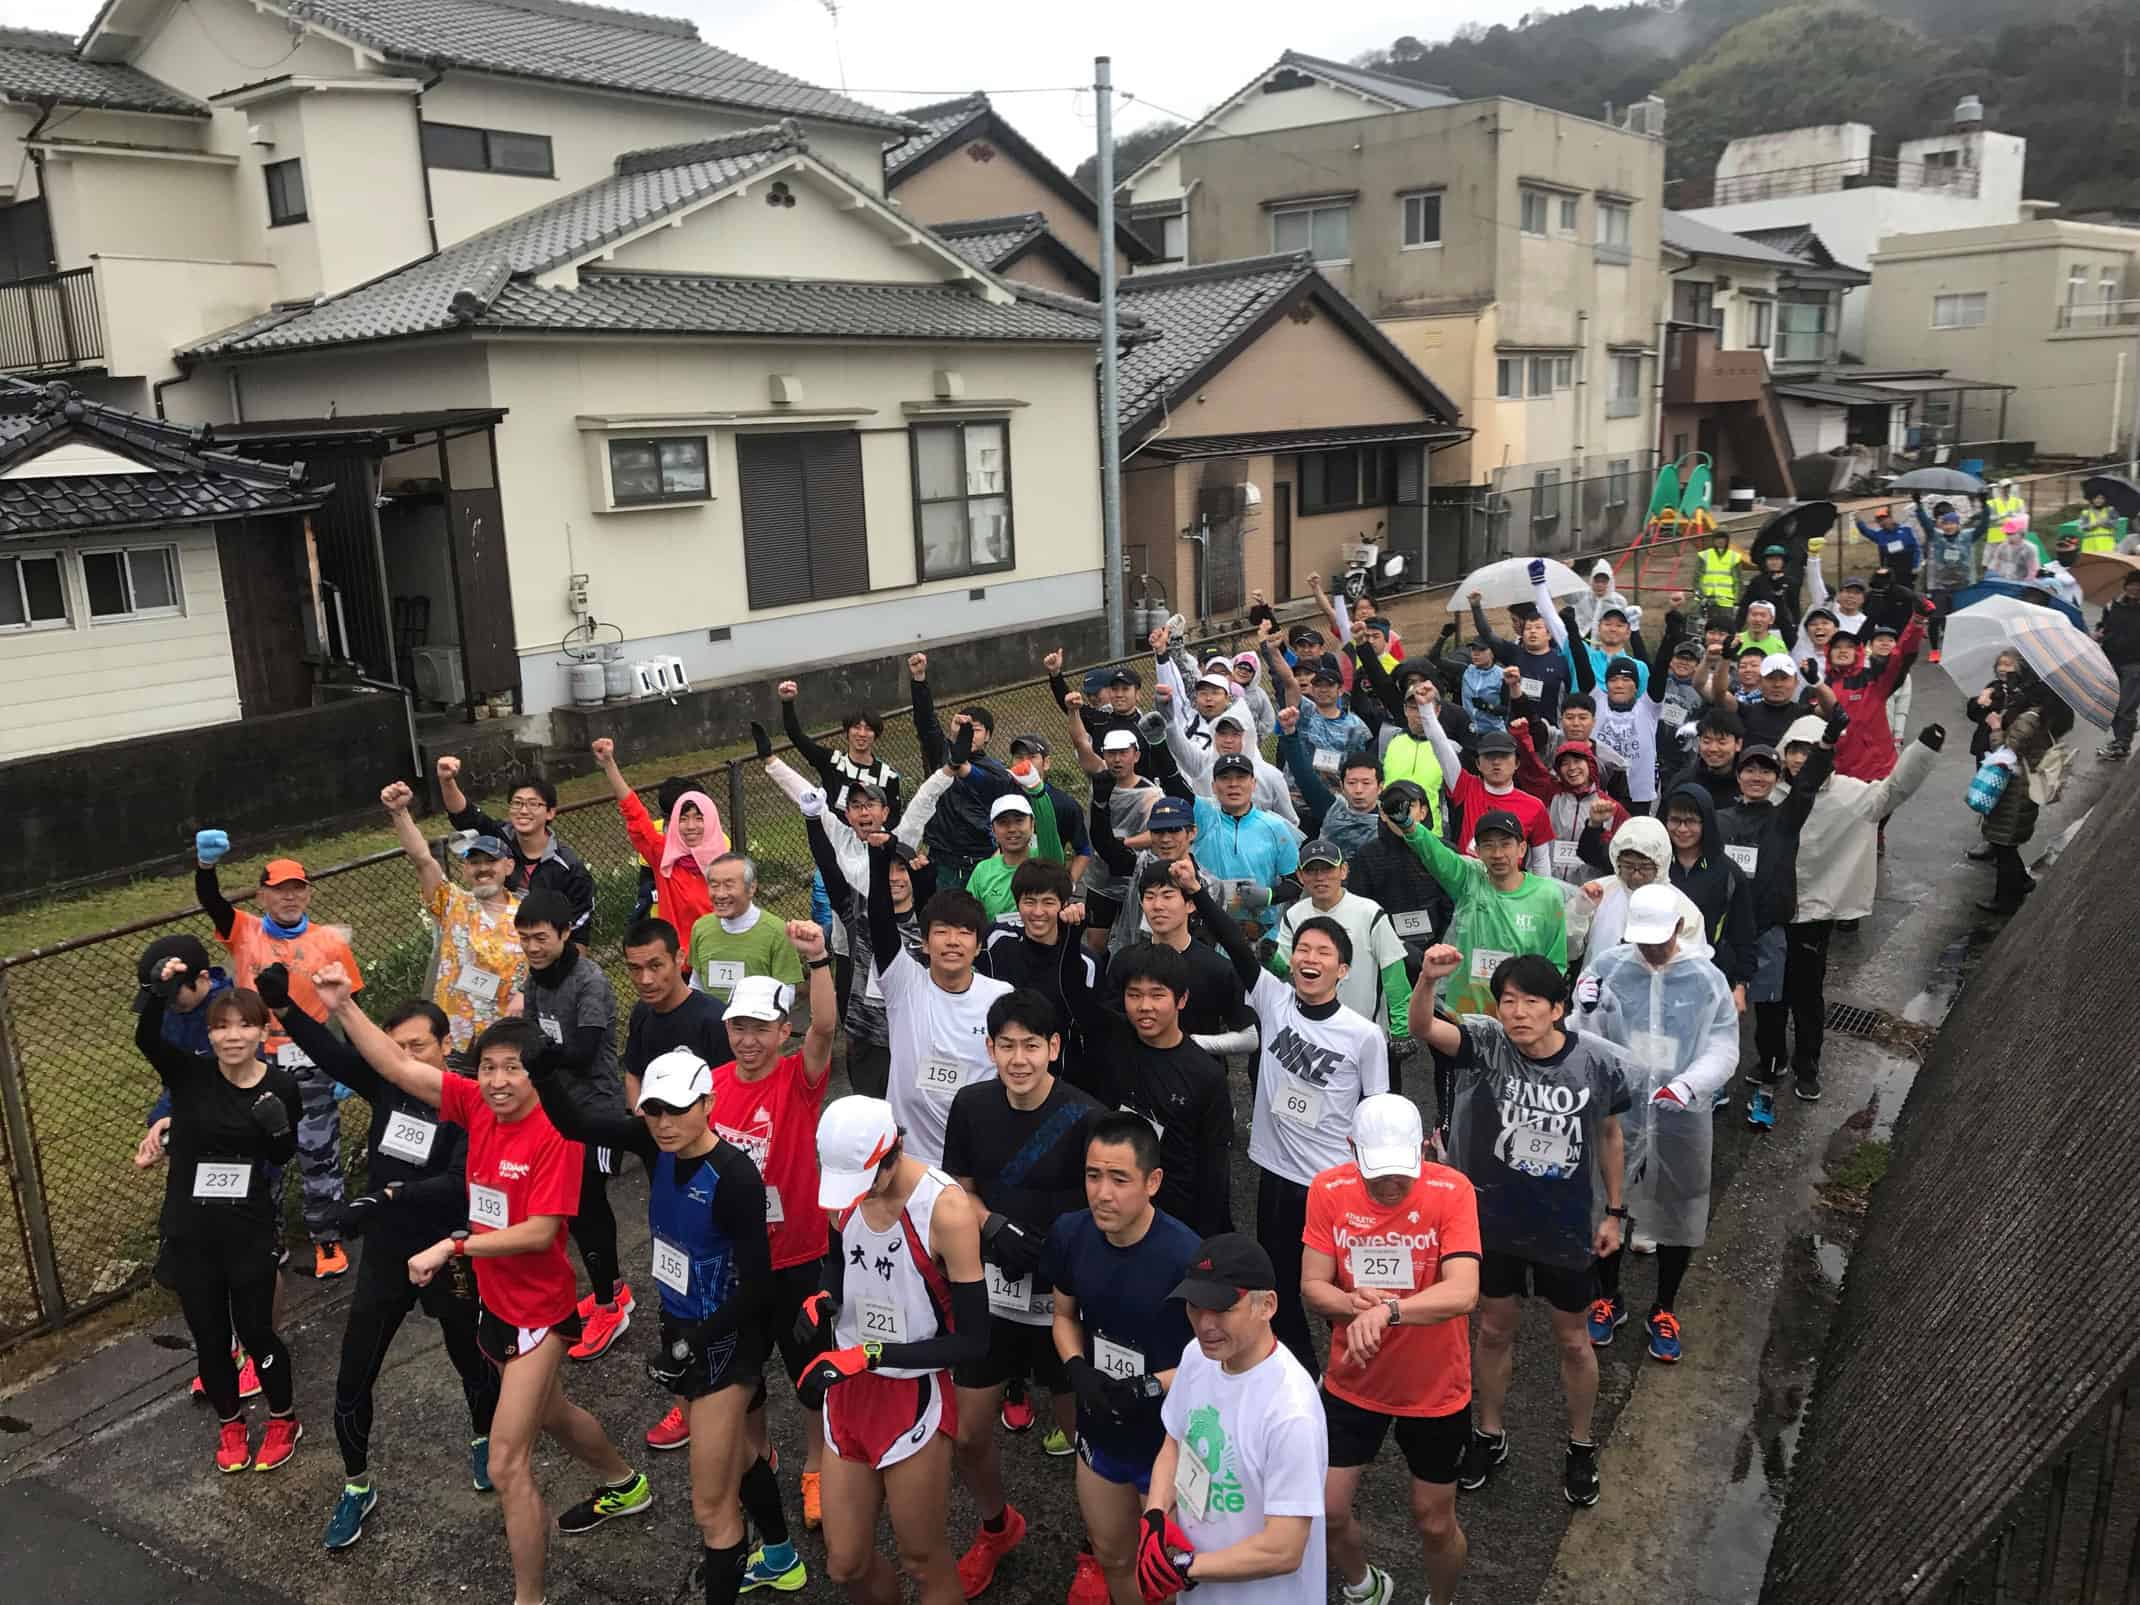 Ninoshima eco marathon island road races in hiroshima